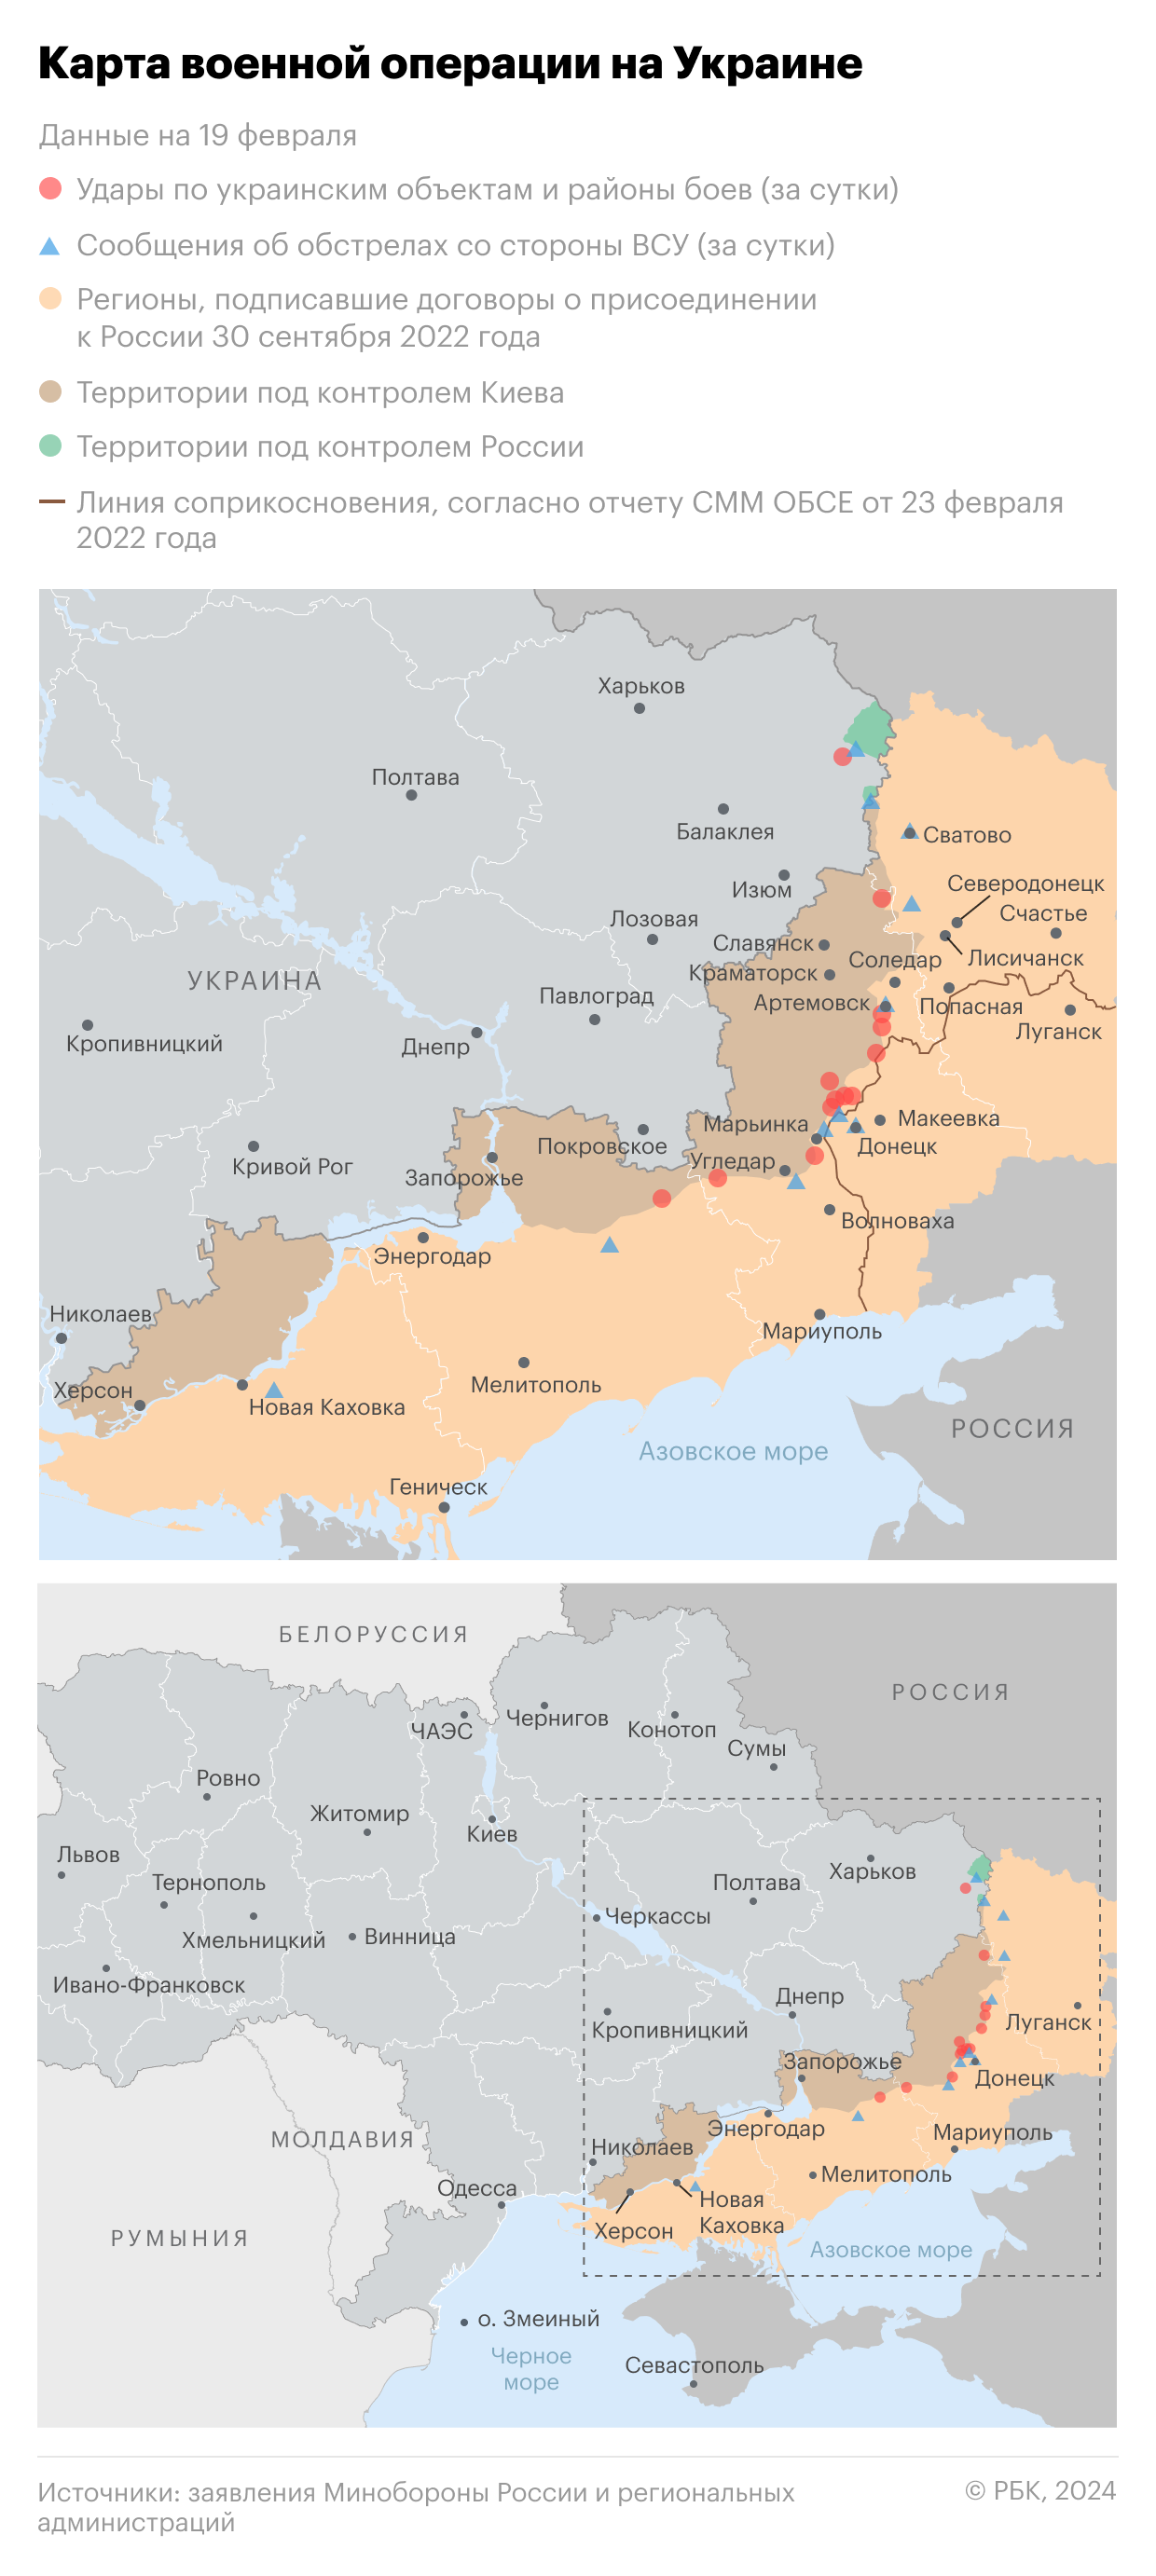 Военная операция на Украине. Карта на 19 февраля